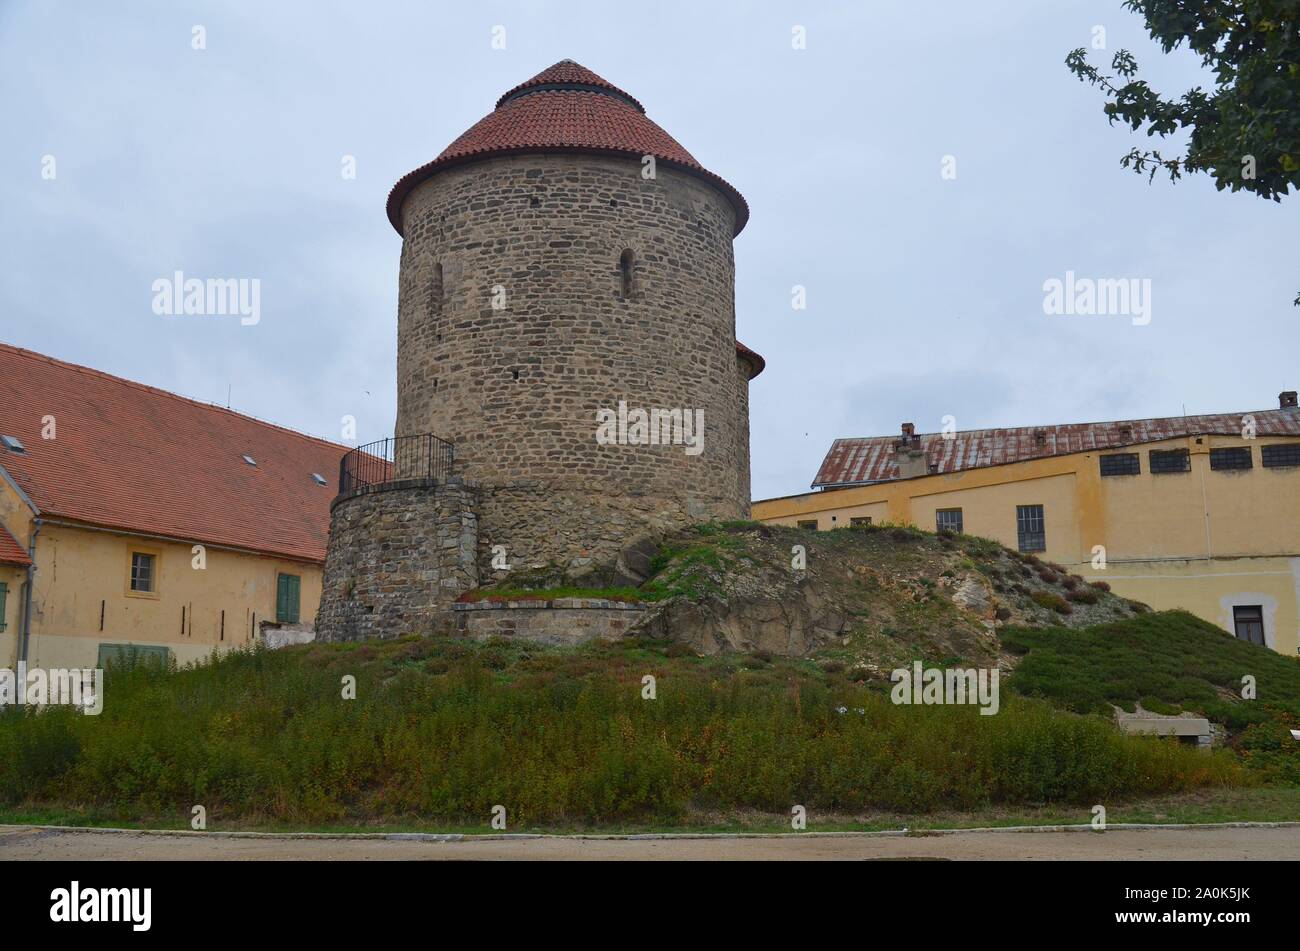 Die mittelalterliche Stadt Znojmo (Znaim) in der Tschechischen Republik: Die romanische Rotunde Foto Stock